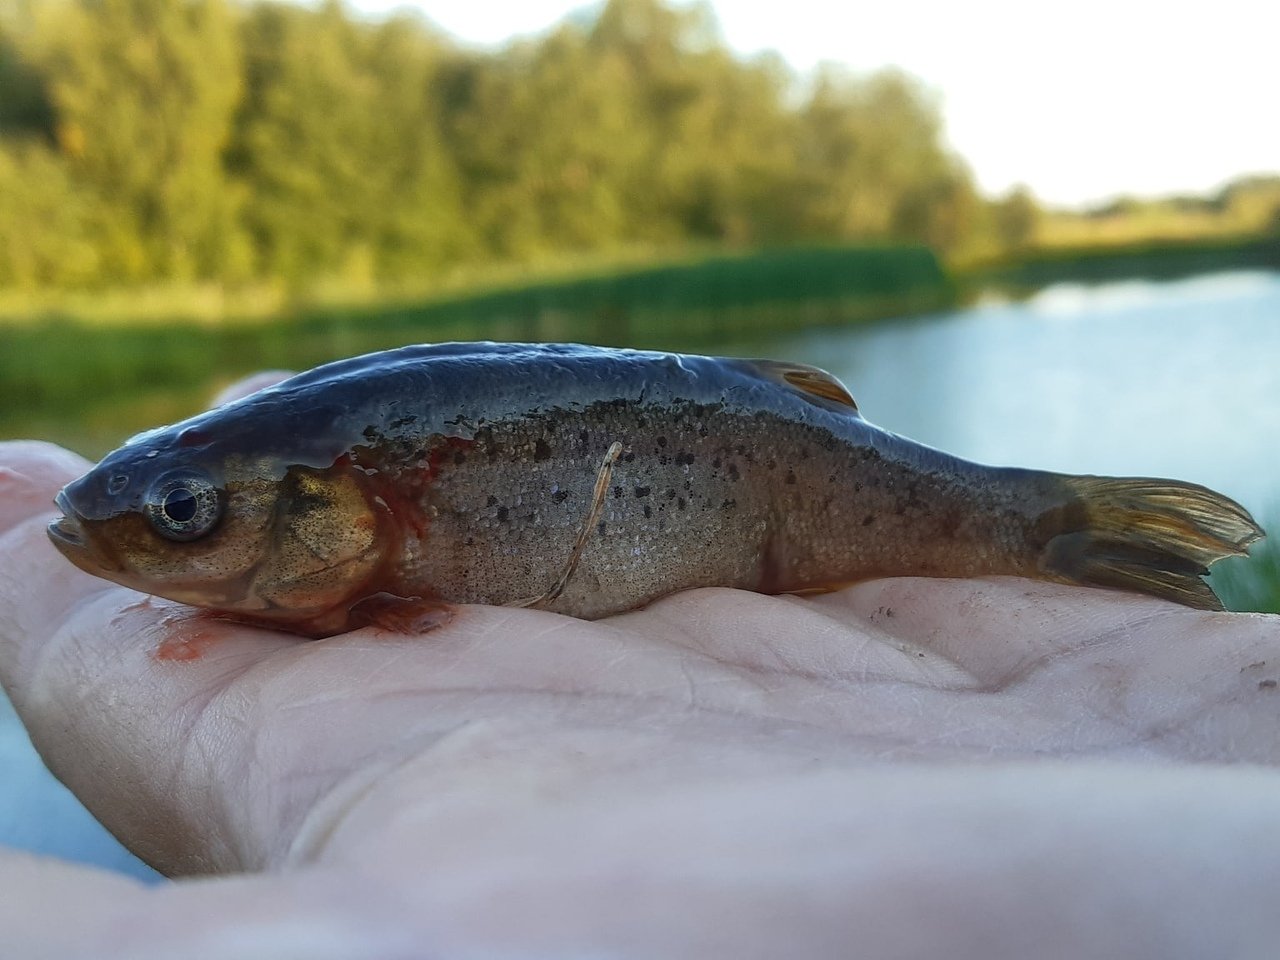 Гольян озерный фото и описание – каталог рыб, смотреть онлайн